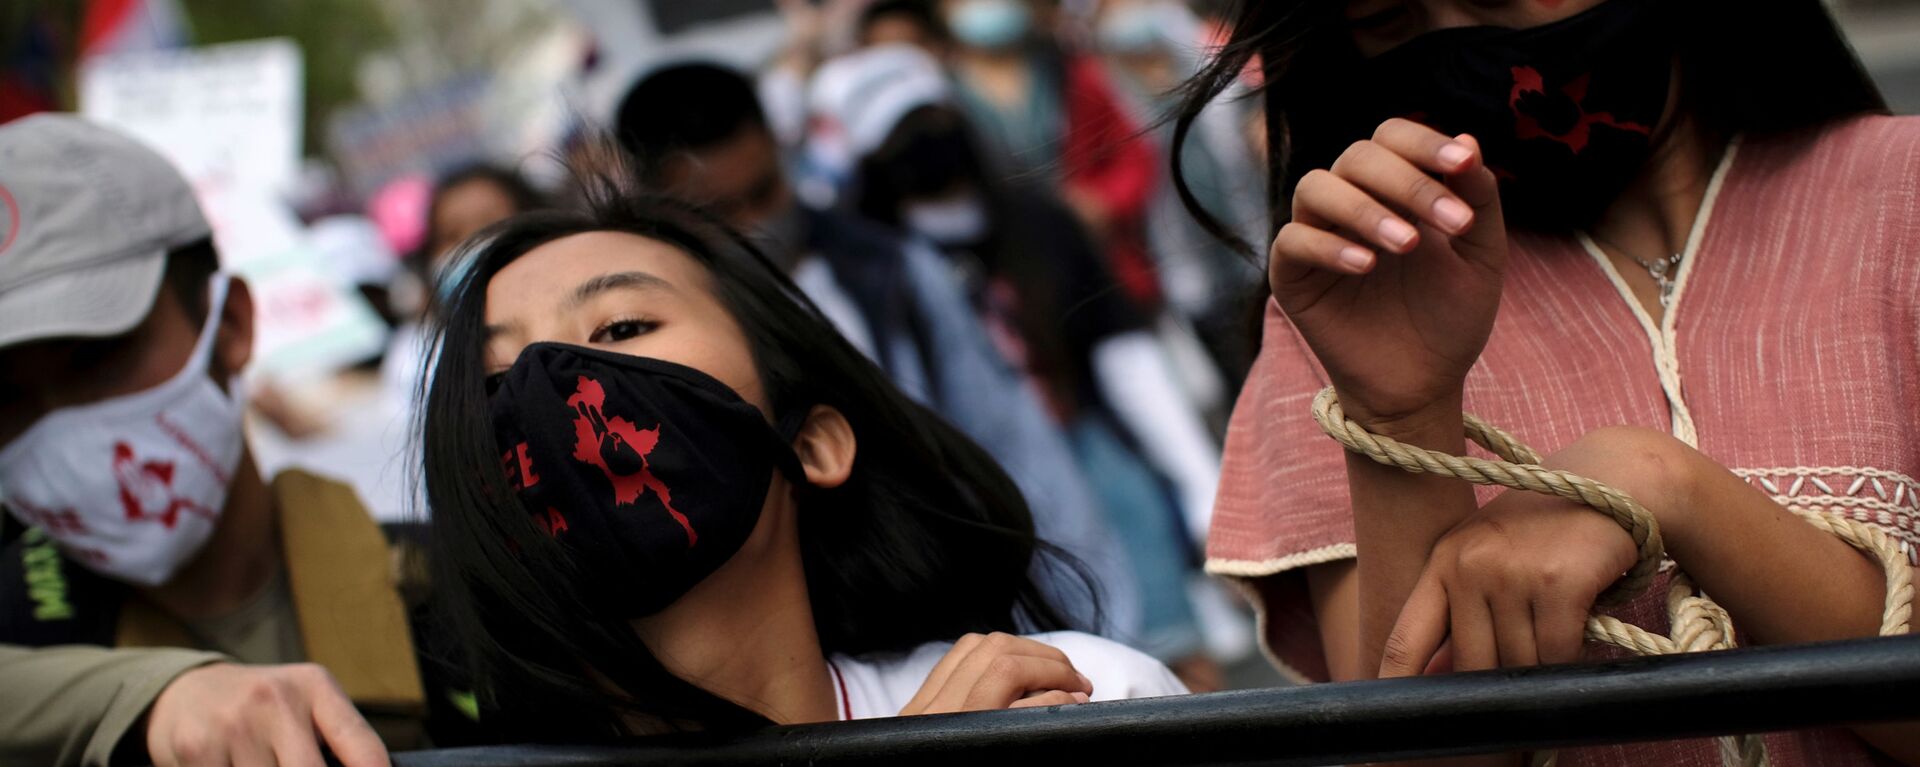 نشطاء ينظمون مظاهرة ضد العنف وسوء المعاملة خلال احتجاجات ضد الانقلاب العسكري في ميانمار، أمام سفارة ميانمار في واشنطن، الولايات المتحدة، 10 أبريل 2021 - سبوتنيك عربي, 1920, 15.11.2021